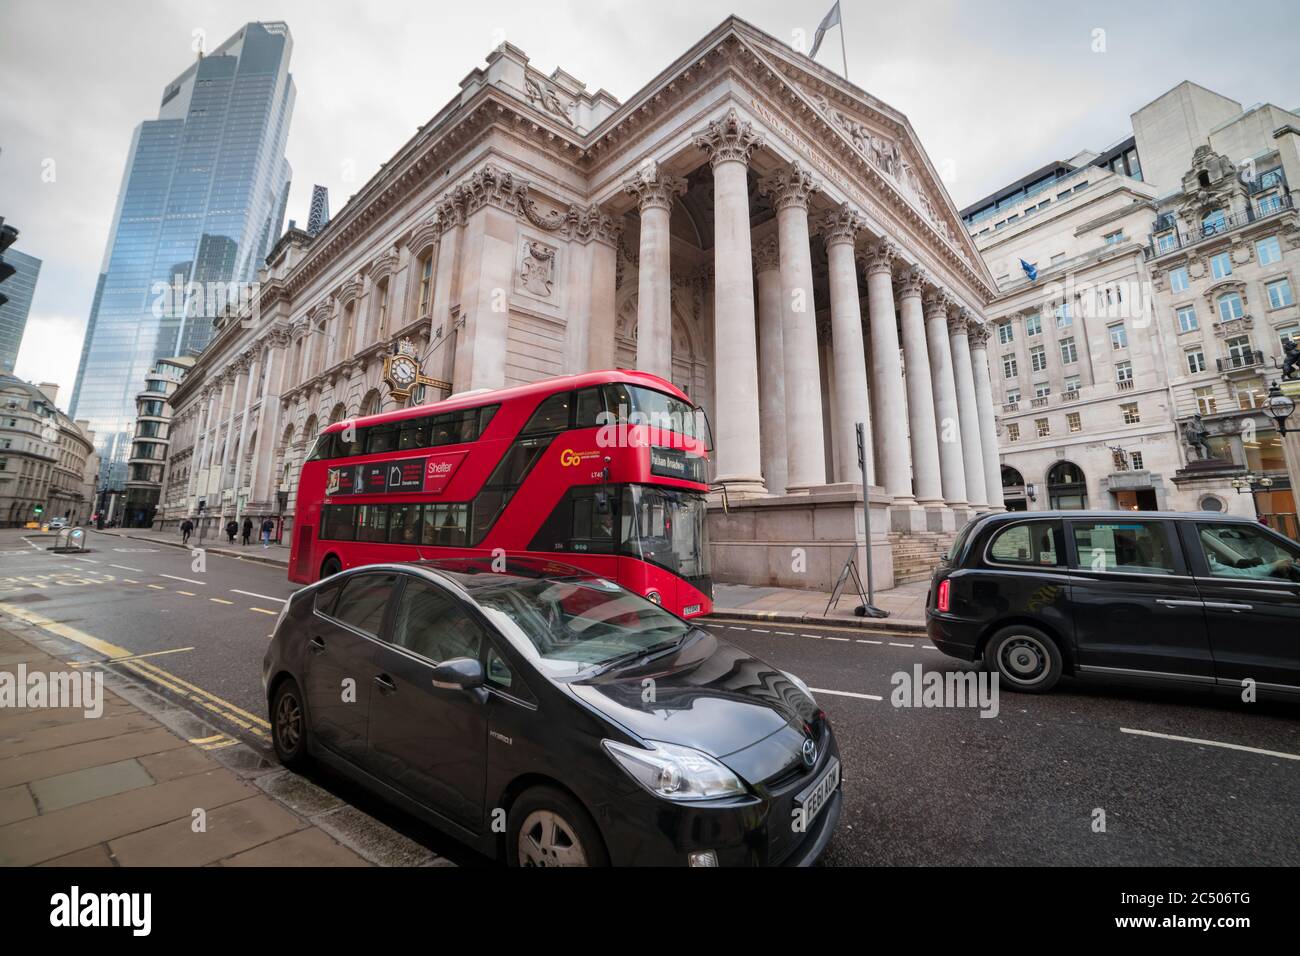 Vista sulla strada dell'edificio Royal Exchange con un autobus a due piani che passa accanto. Foto Stock